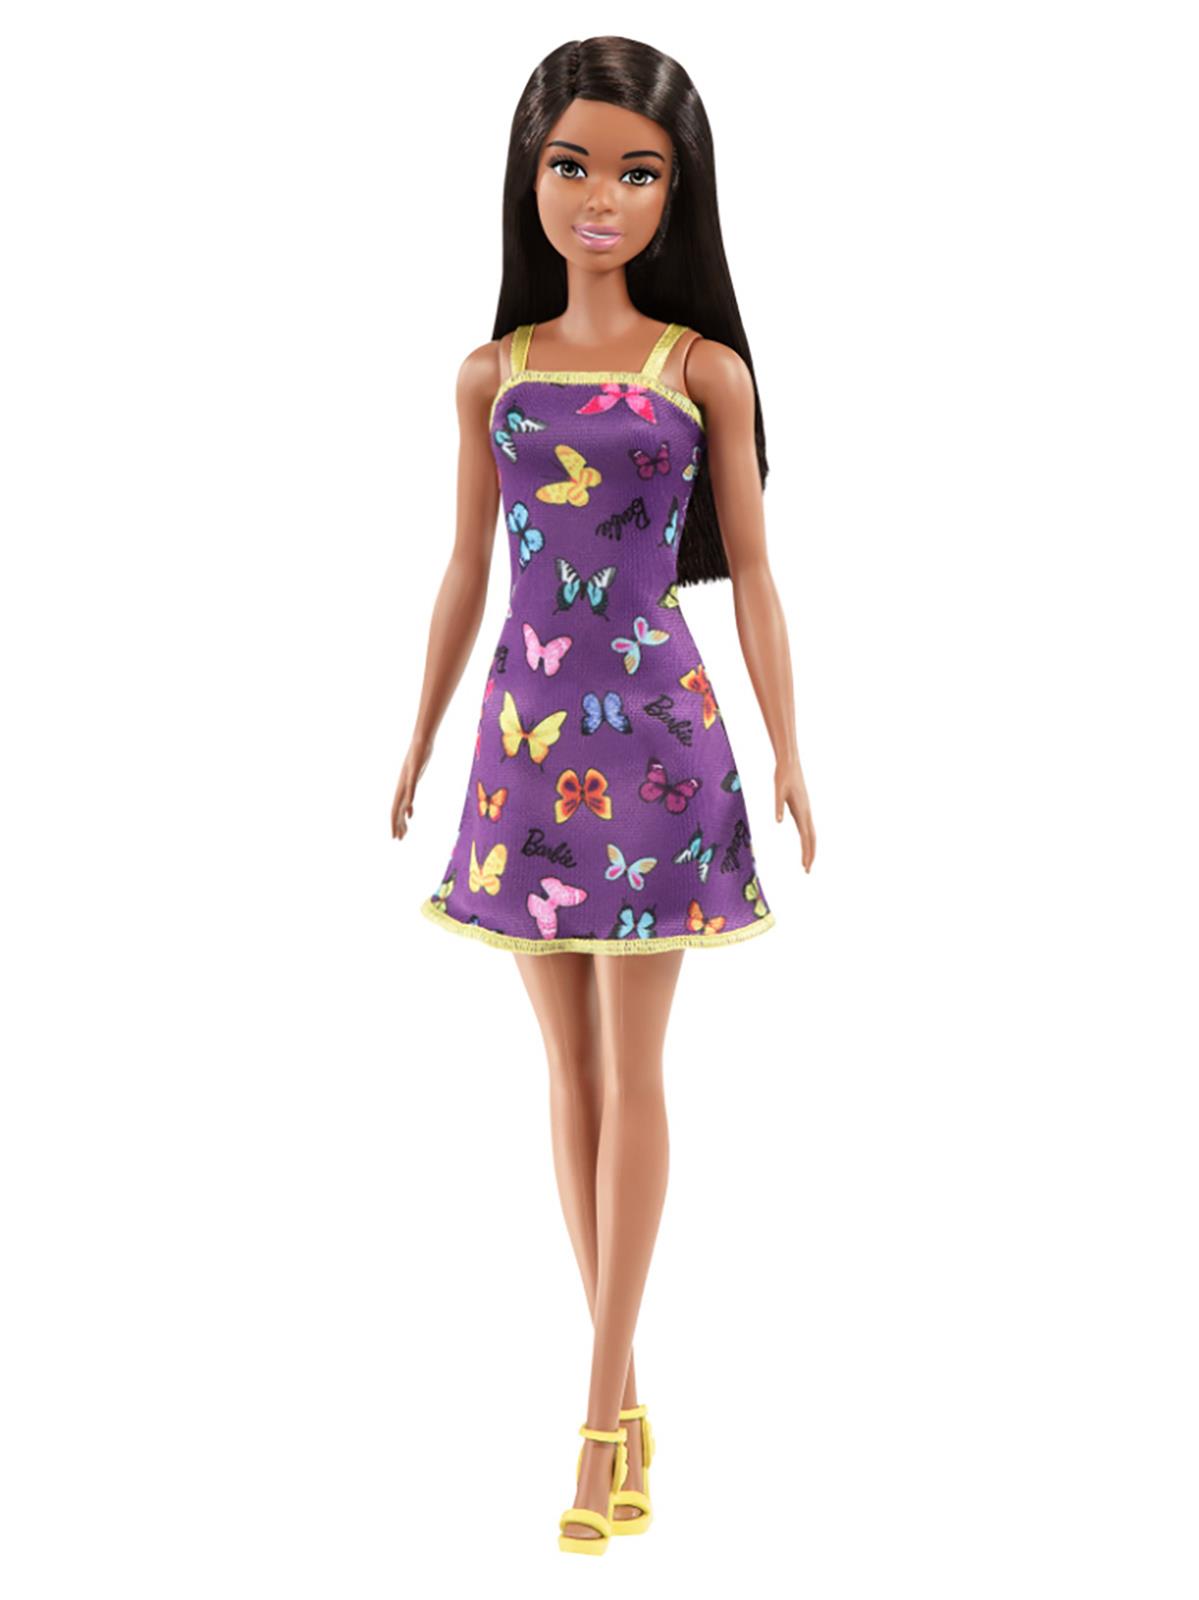 Barbie Şık Kıyafetli Bebekler  - Mor Kelebek Elbiseli 3+ Yaş